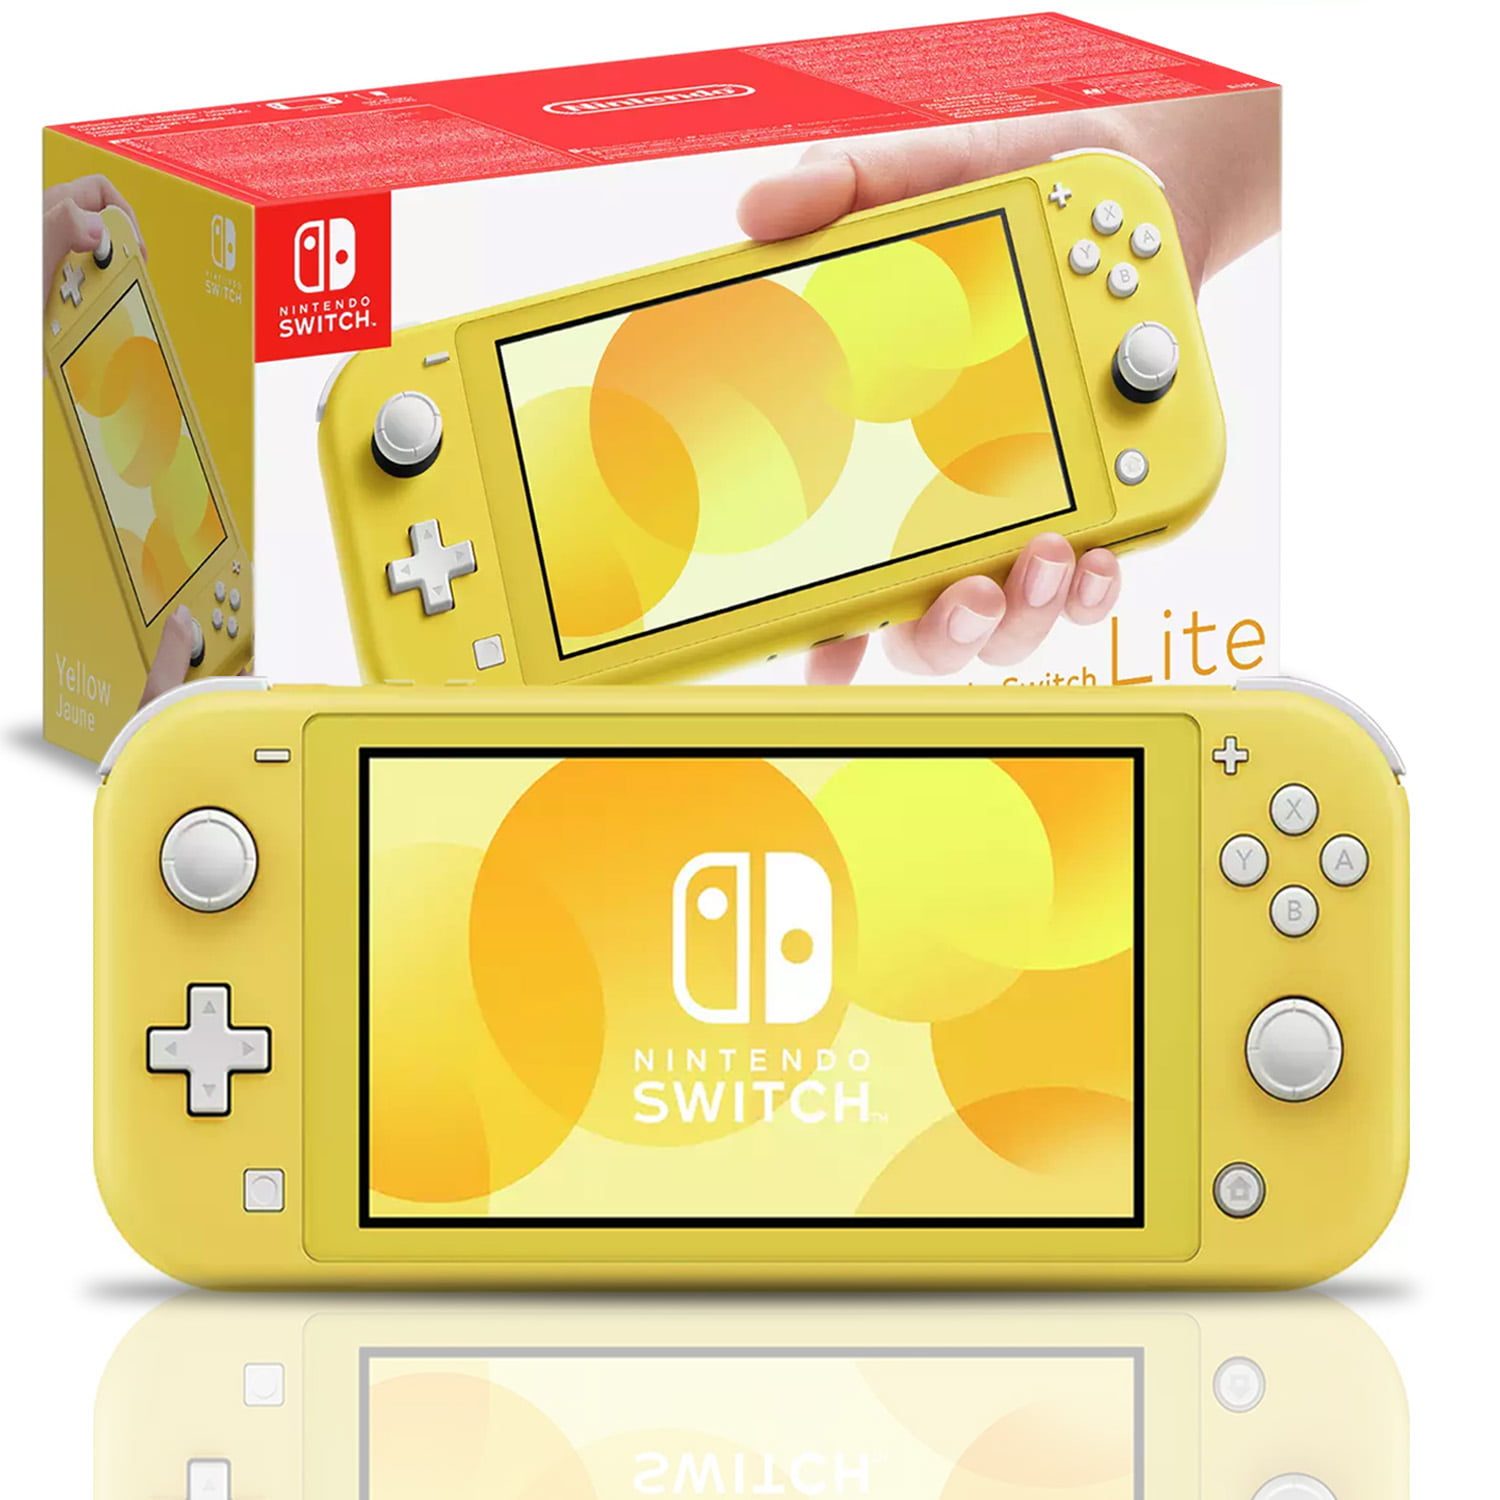 Nintendo Switch Lite (Yellow) Bundle with Extra Warranty - Walmart.com